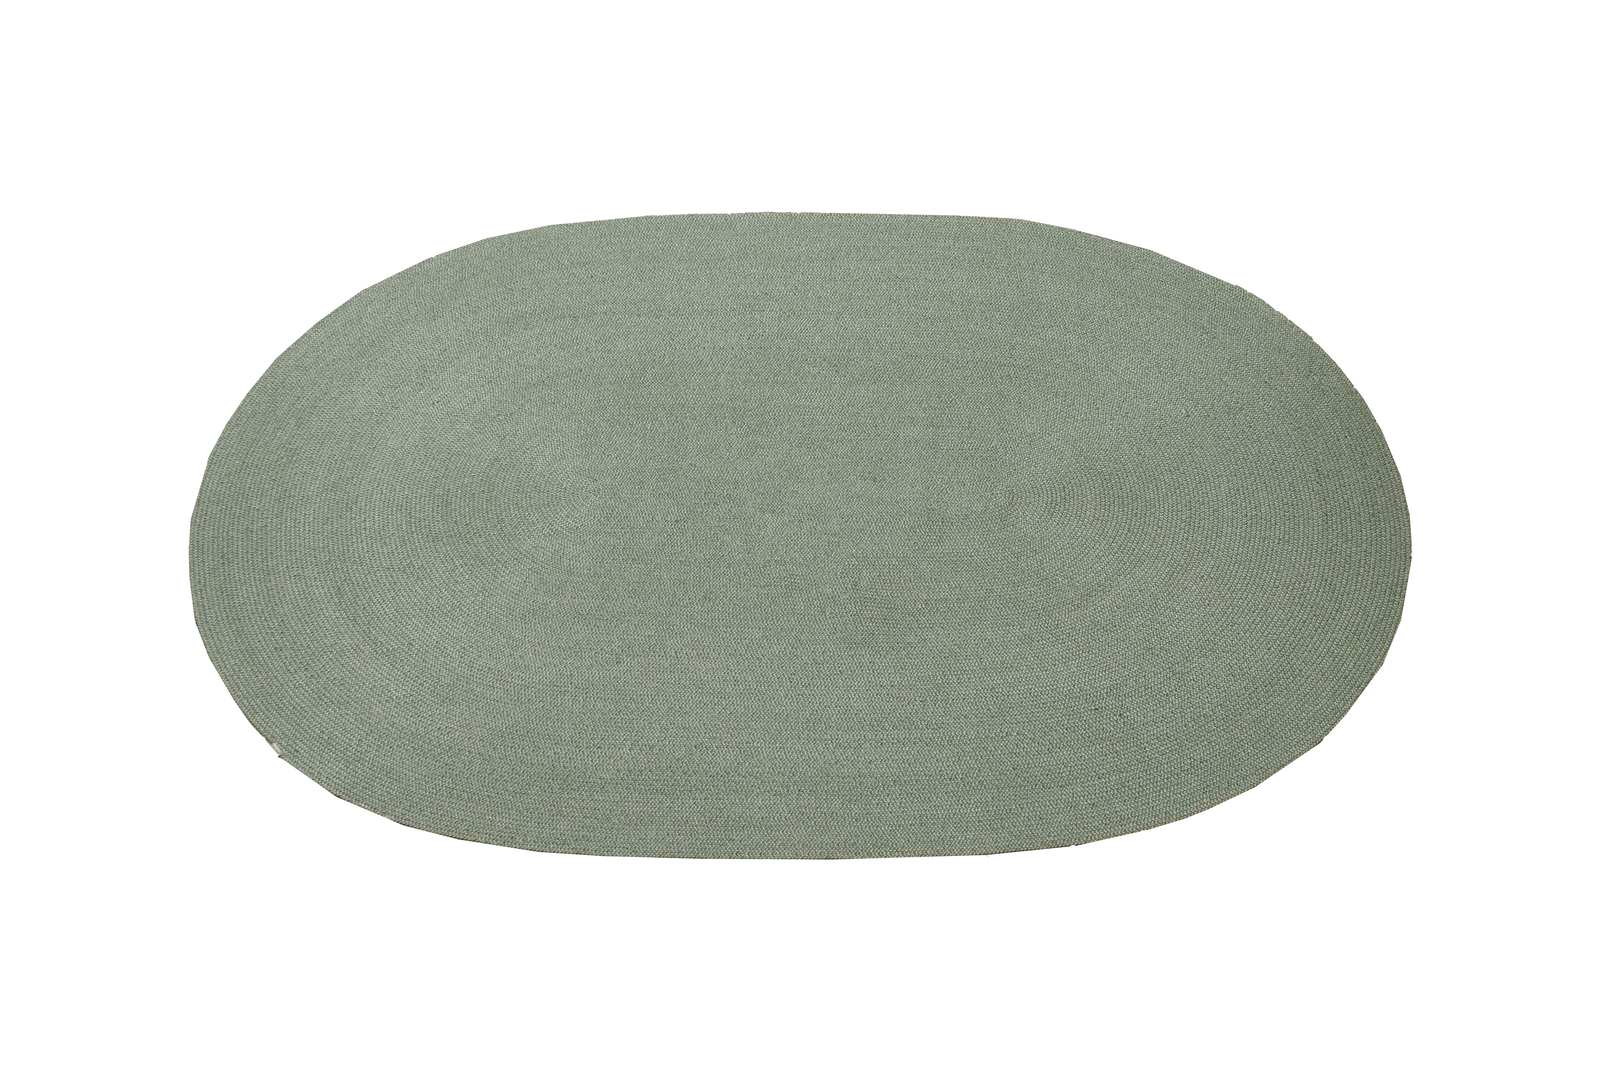 Cane-line Arrow | Teppich oval 200 x 120 cm | Green